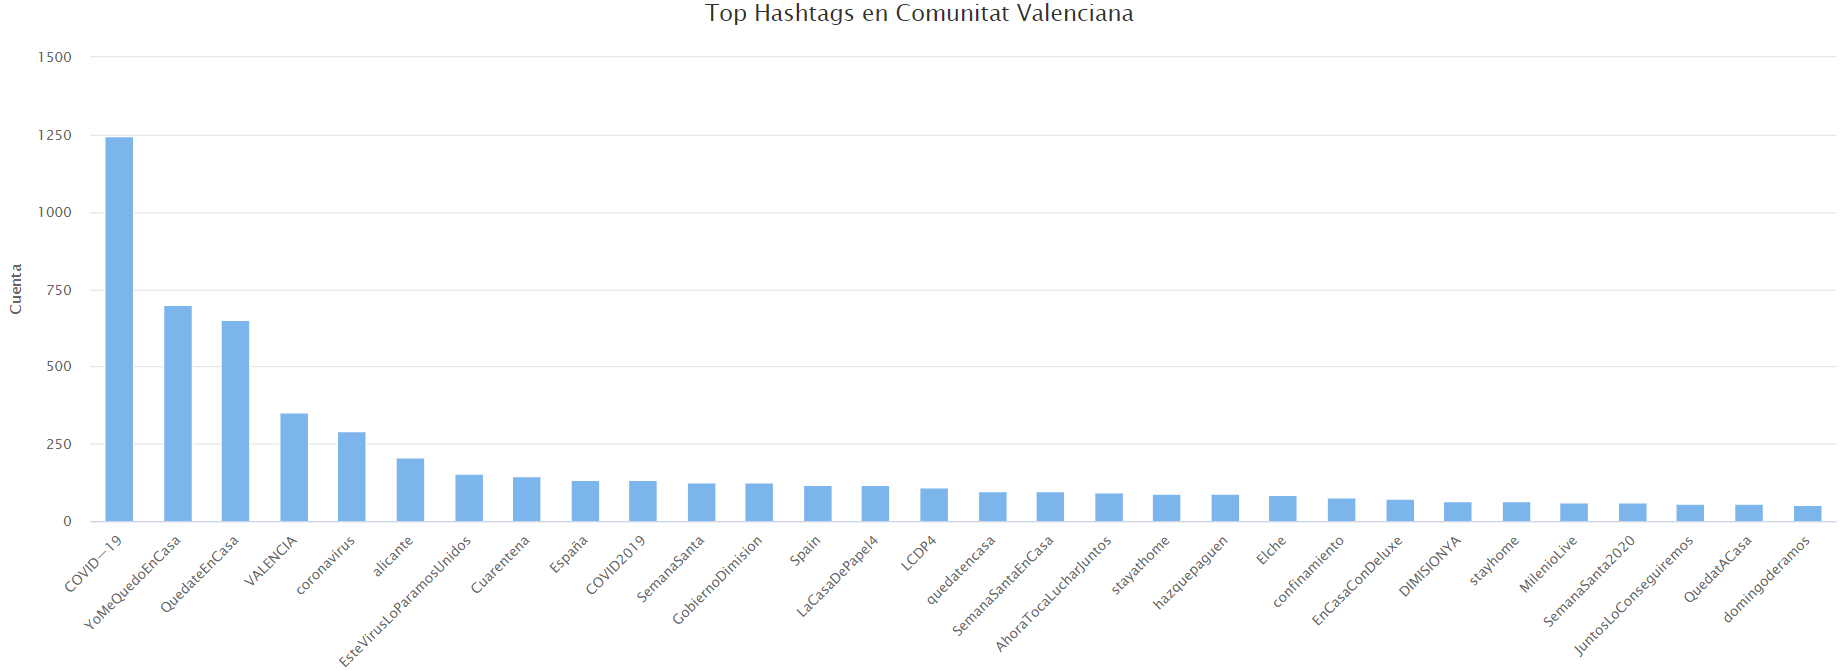 Hashtags más frecuentes en Comunidad Valenciana